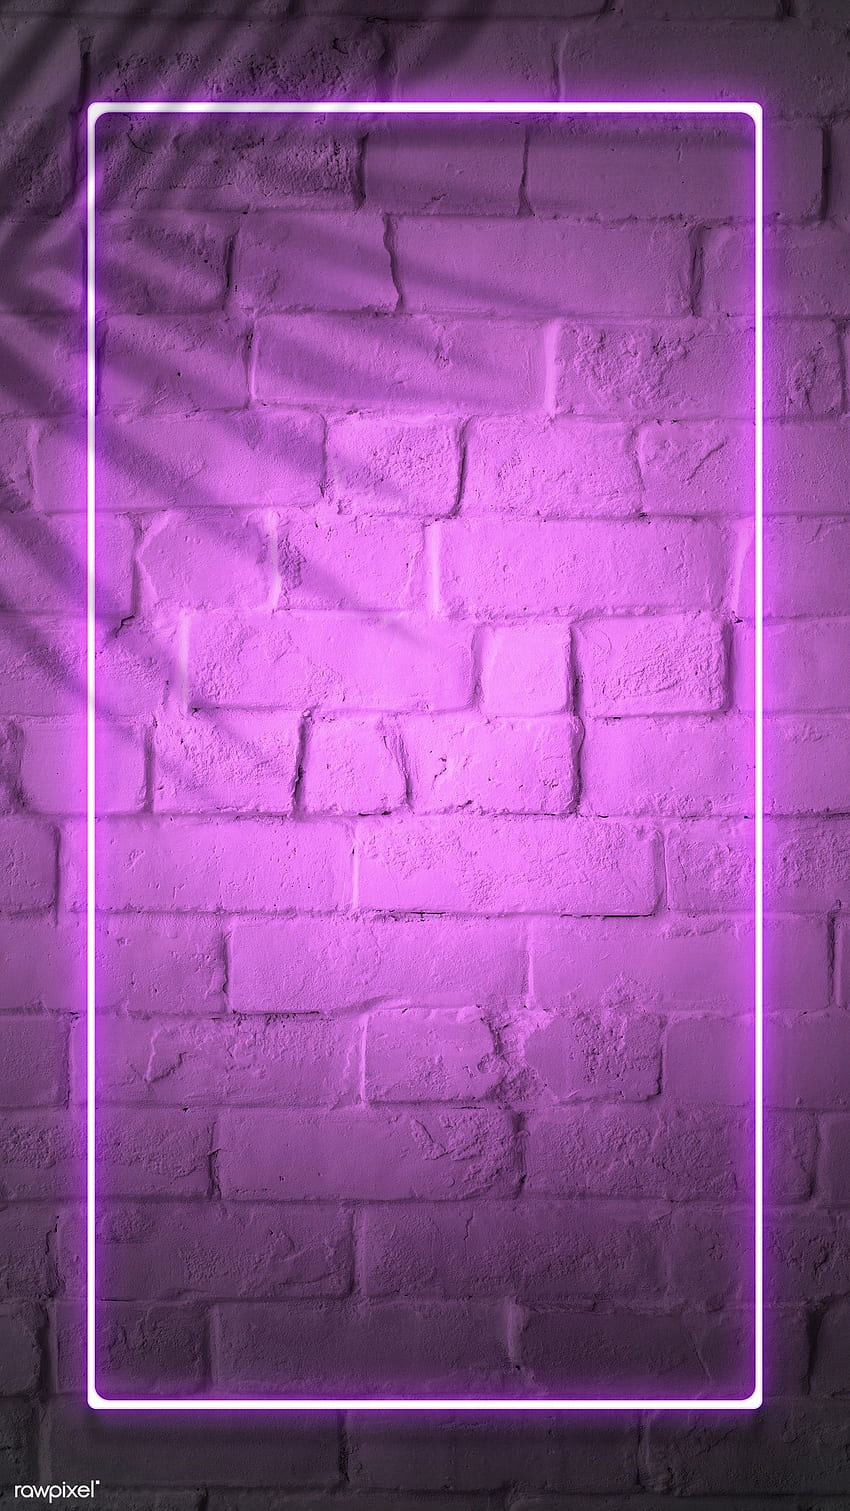 보라색 배경, 네온, 보라색 프레임, 벽돌 벽 네온 및 프레임 네온 라이트 핑크에 대한 Jubjang의 트로피컬 핑크 네온 불빛 전화 화면의 프리미엄 PSD / 1223358 HD 전화 배경 화면